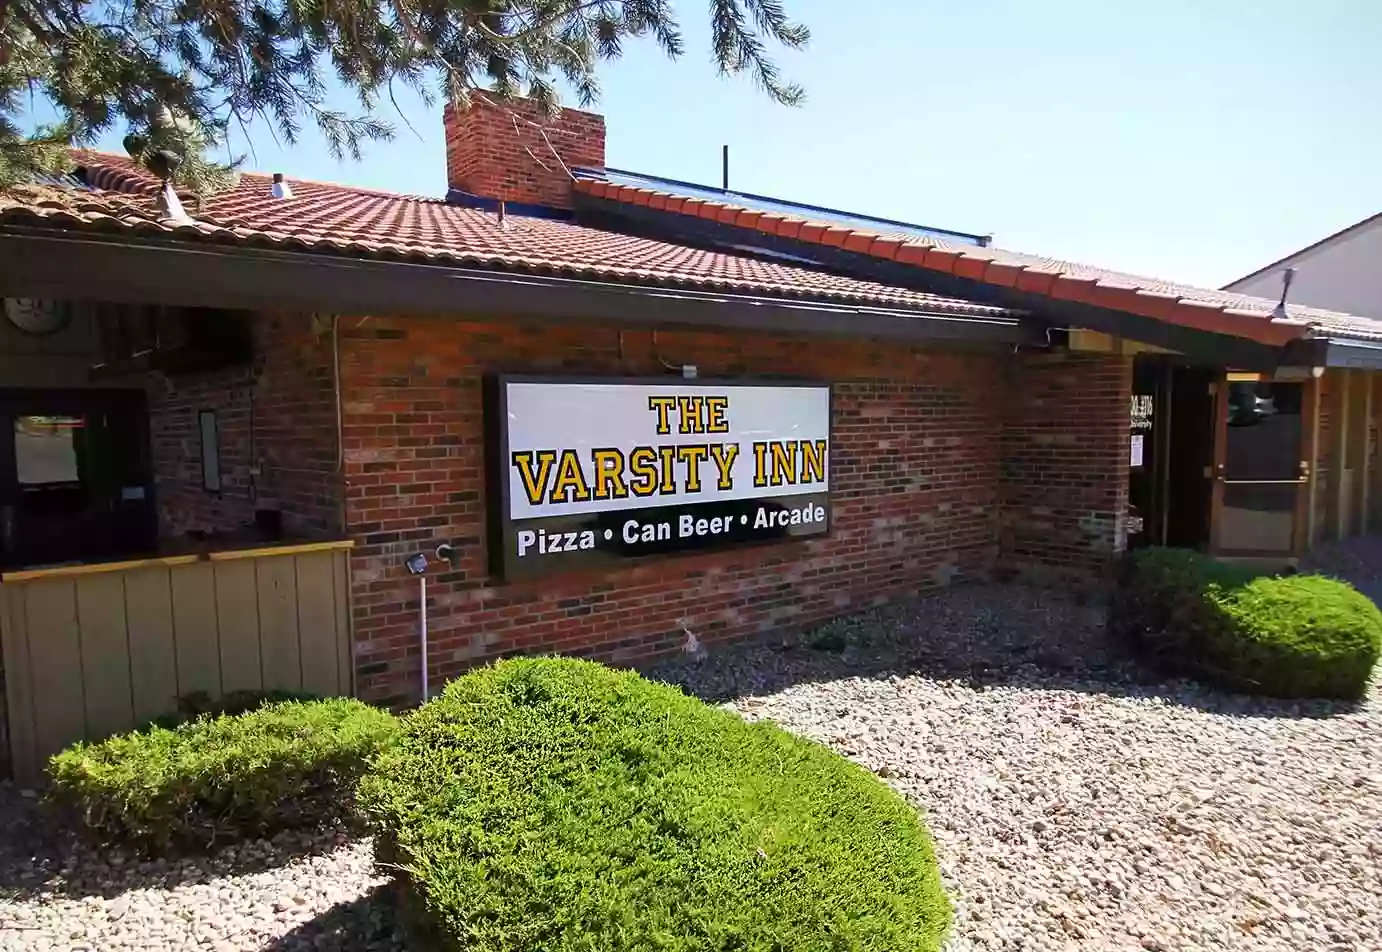 The Varsity Inn